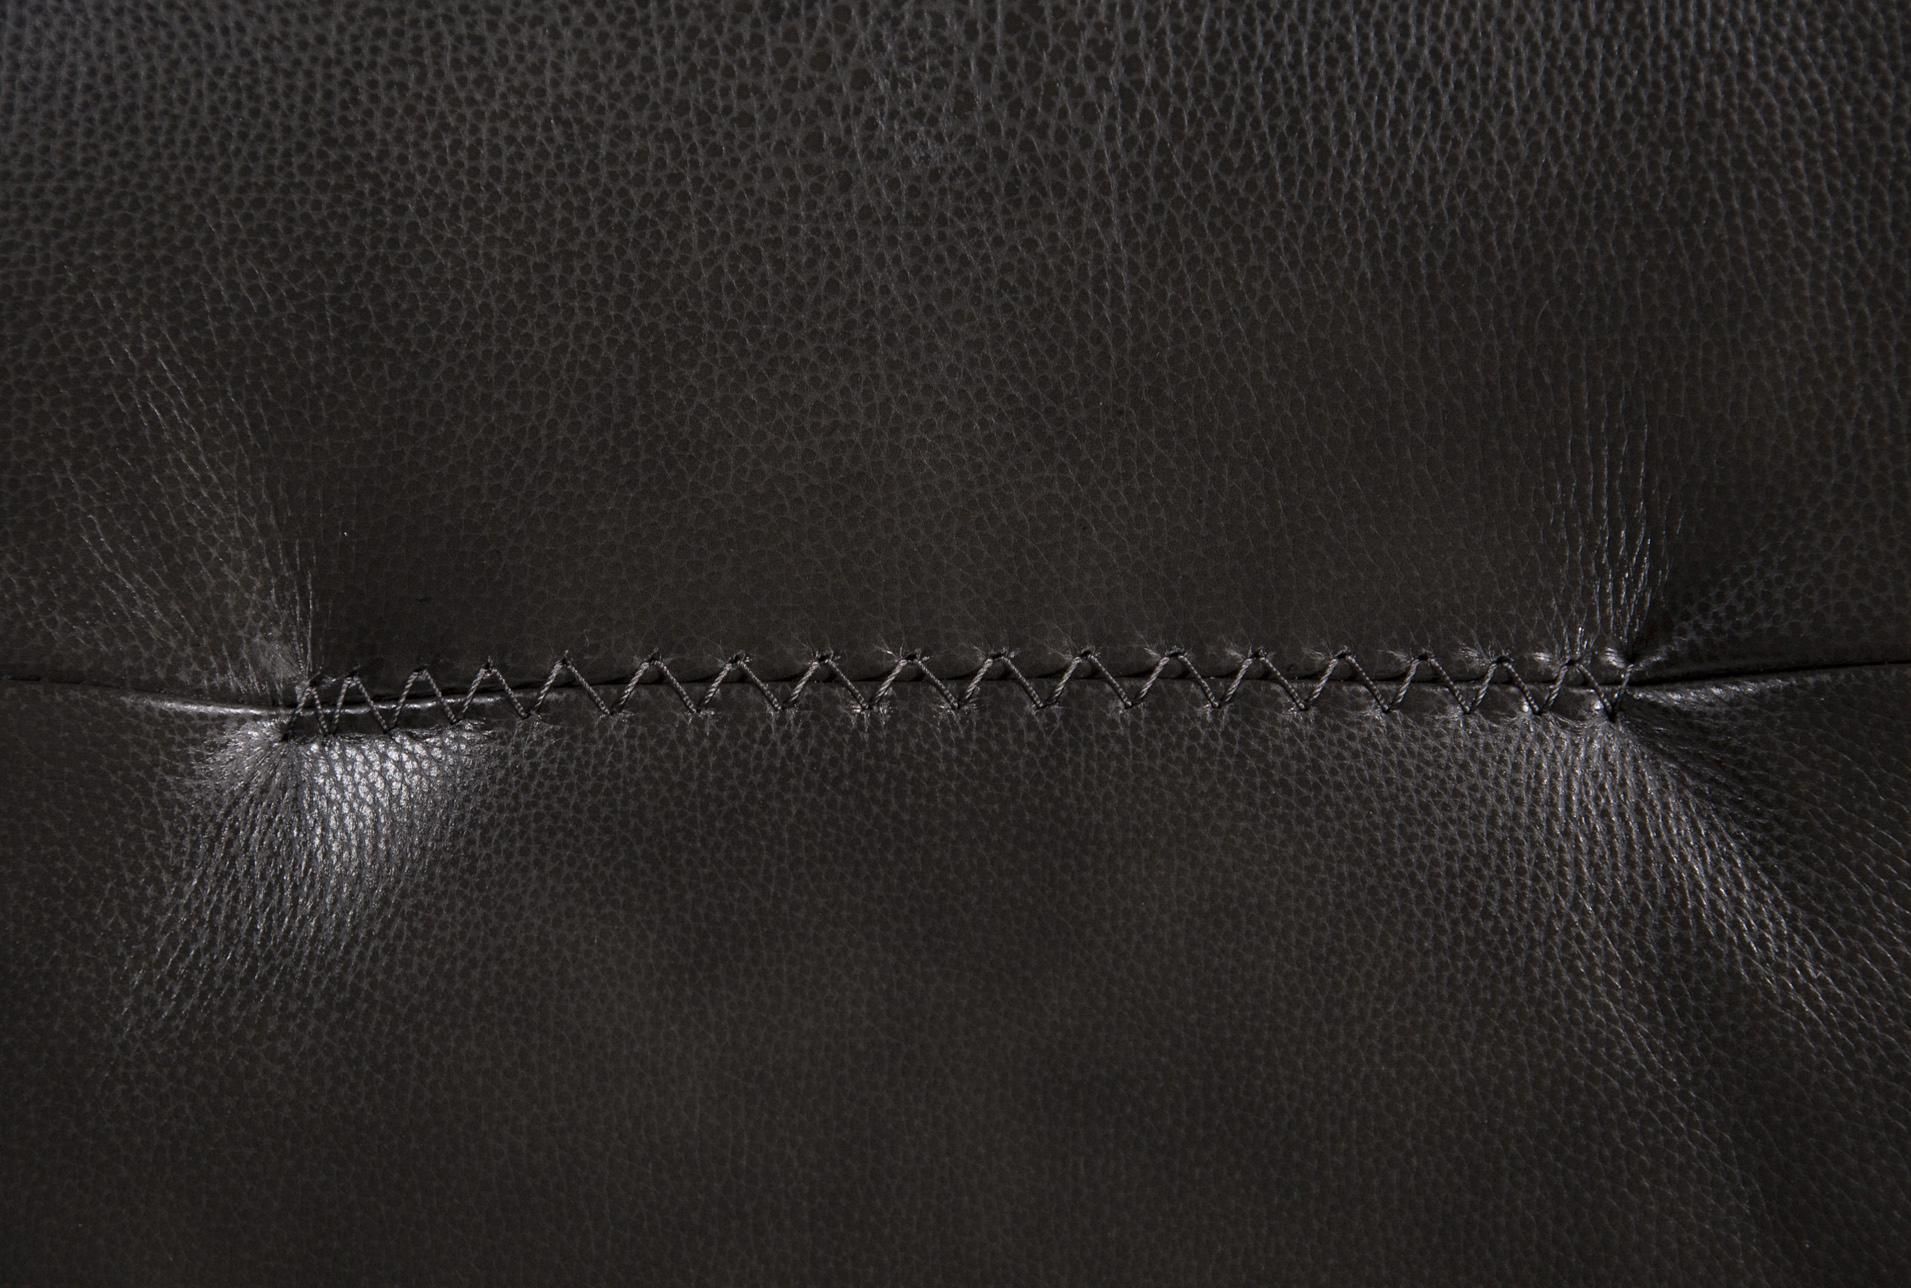 Amala Dark Grey Leather Reclining Swivel Chair #swivelreclinerchairs Inside Amala Dark Grey Leather Reclining Swivel Chairs (View 5 of 20)